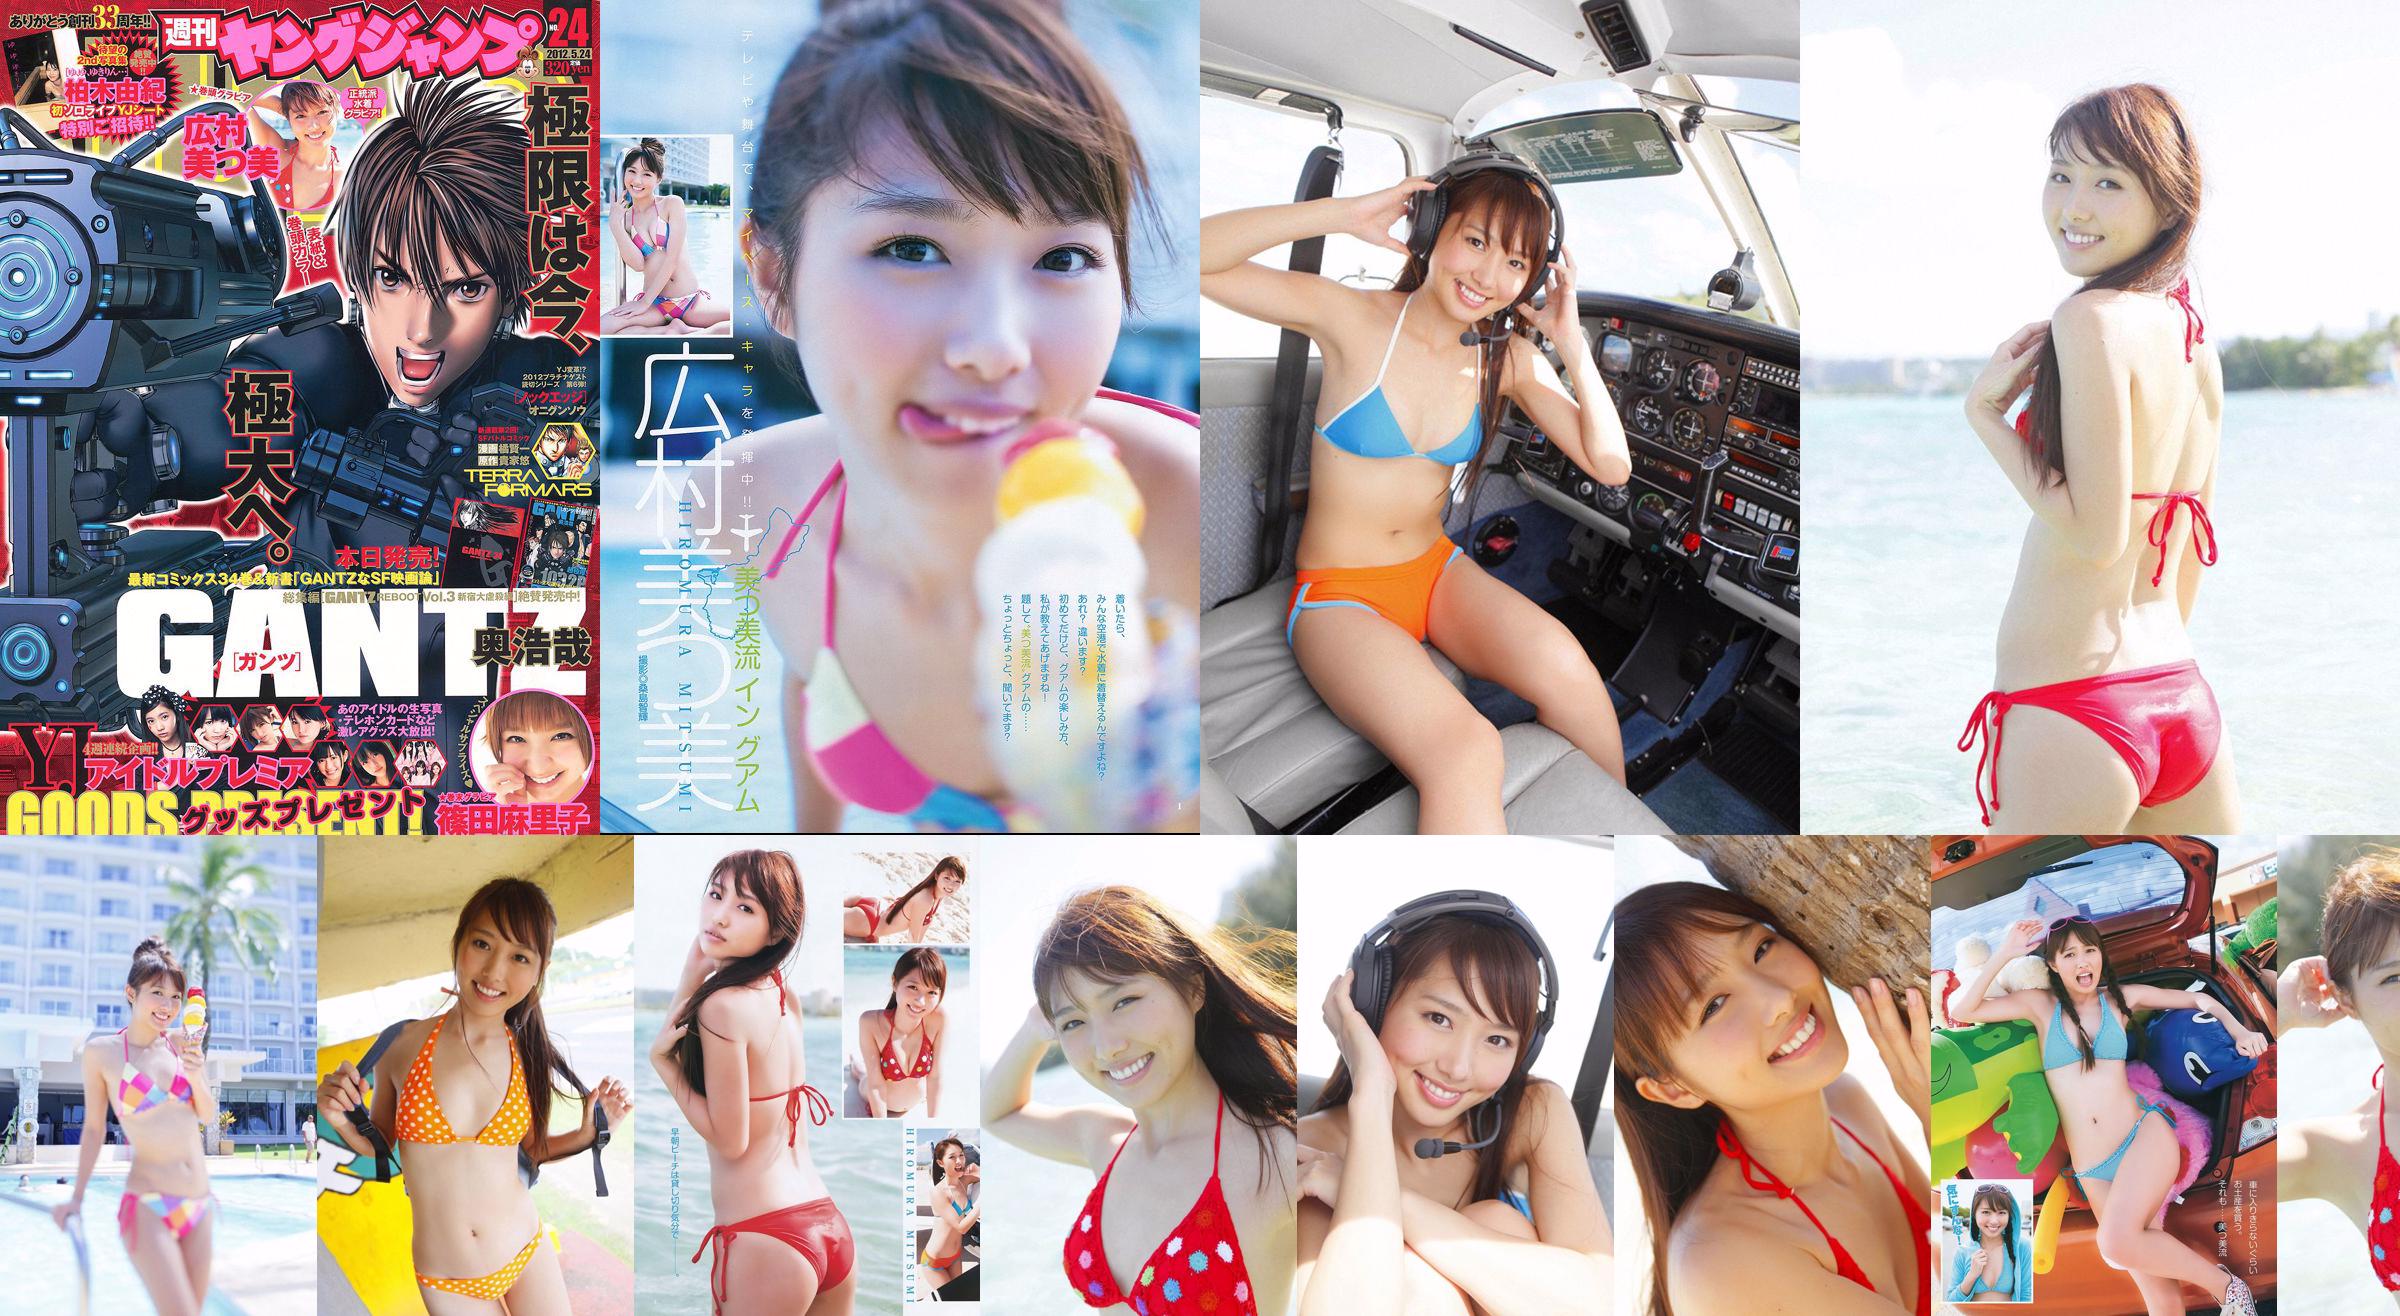 Mitsumi Hiromura Mariko Shinoda [Wekelijkse Young Jump] 2012 No.24 Photo Magazine No.4e4795 Pagina 3